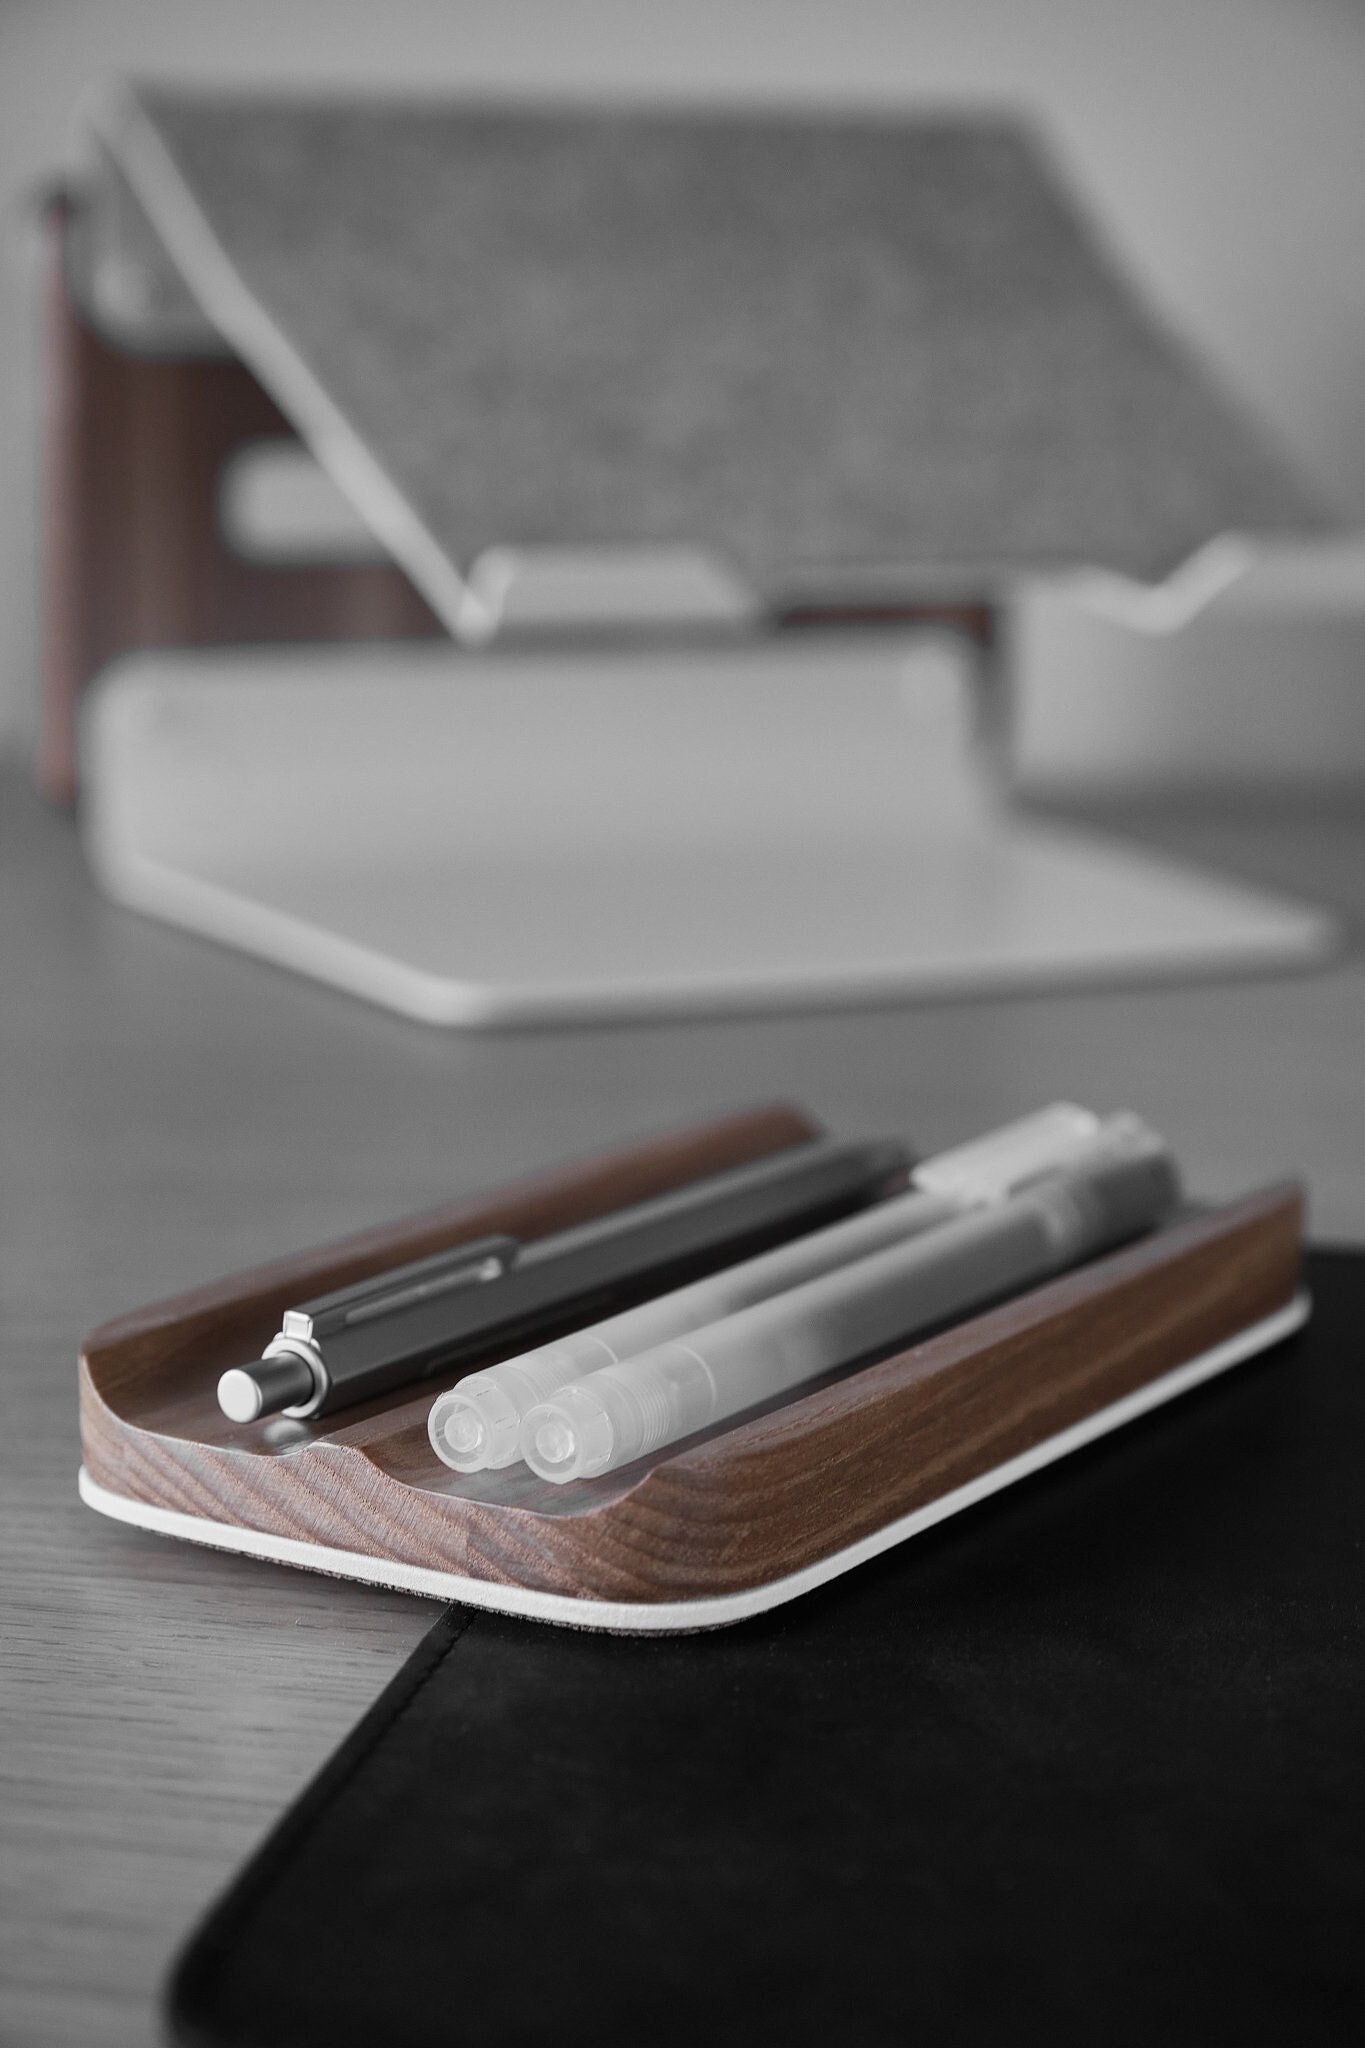 Muji Gel Pen Adapters for Cricut Machines explore 3, Maker 3, Maker,  Explore Air 2 